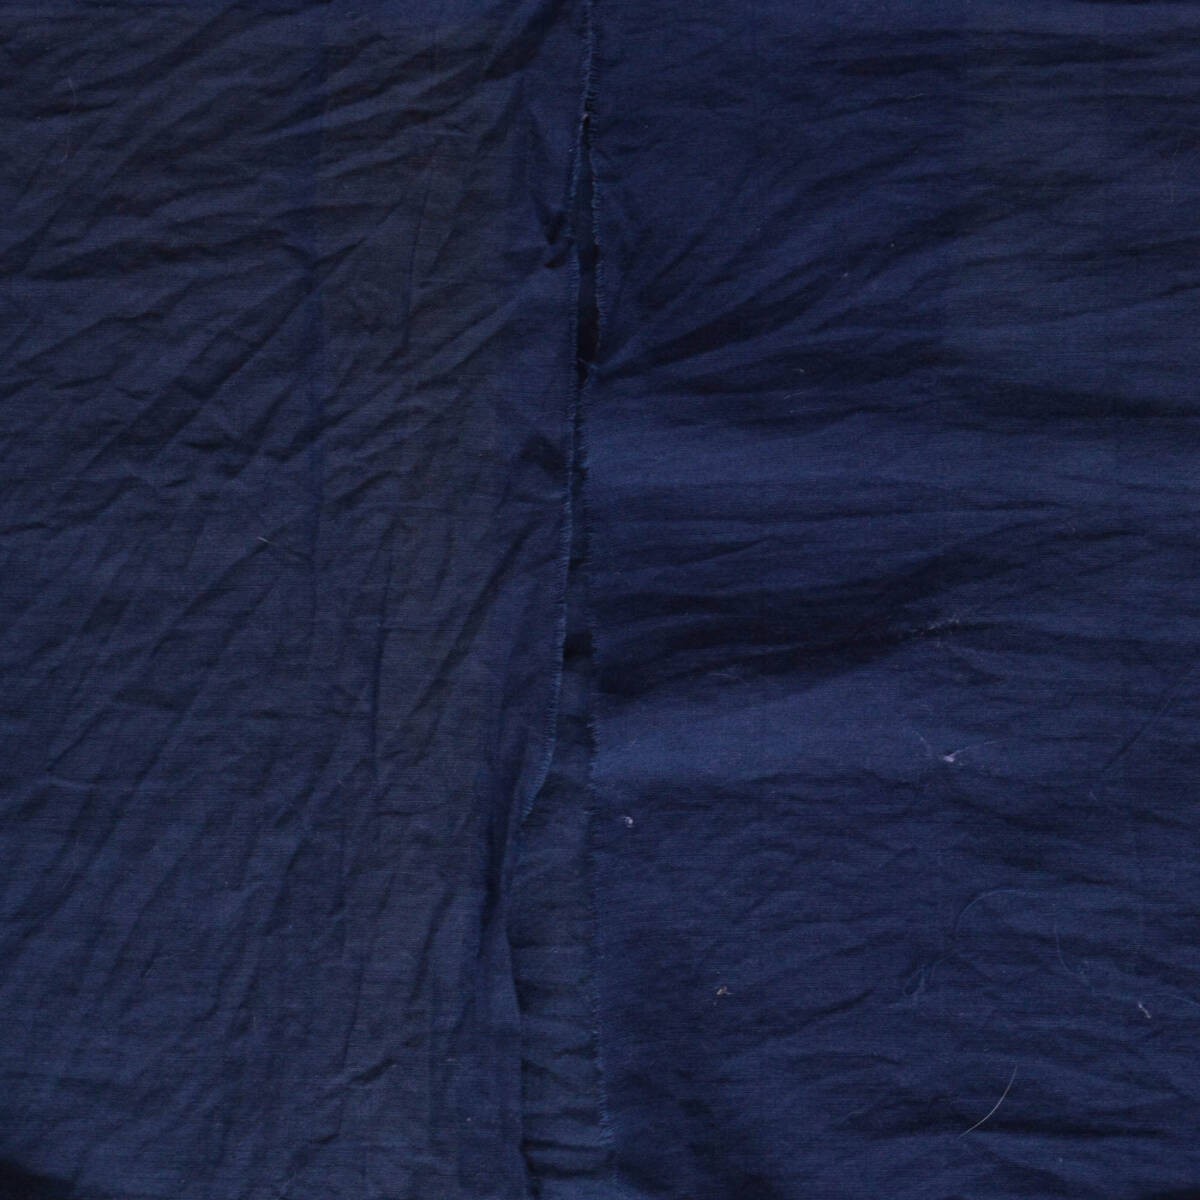 古布 木綿 無地 端切れ リメイク素材 ジャパンヴィンテージ スカーフ ファブリック テキスタイル 3 japanese fabric vintage cotton_画像4